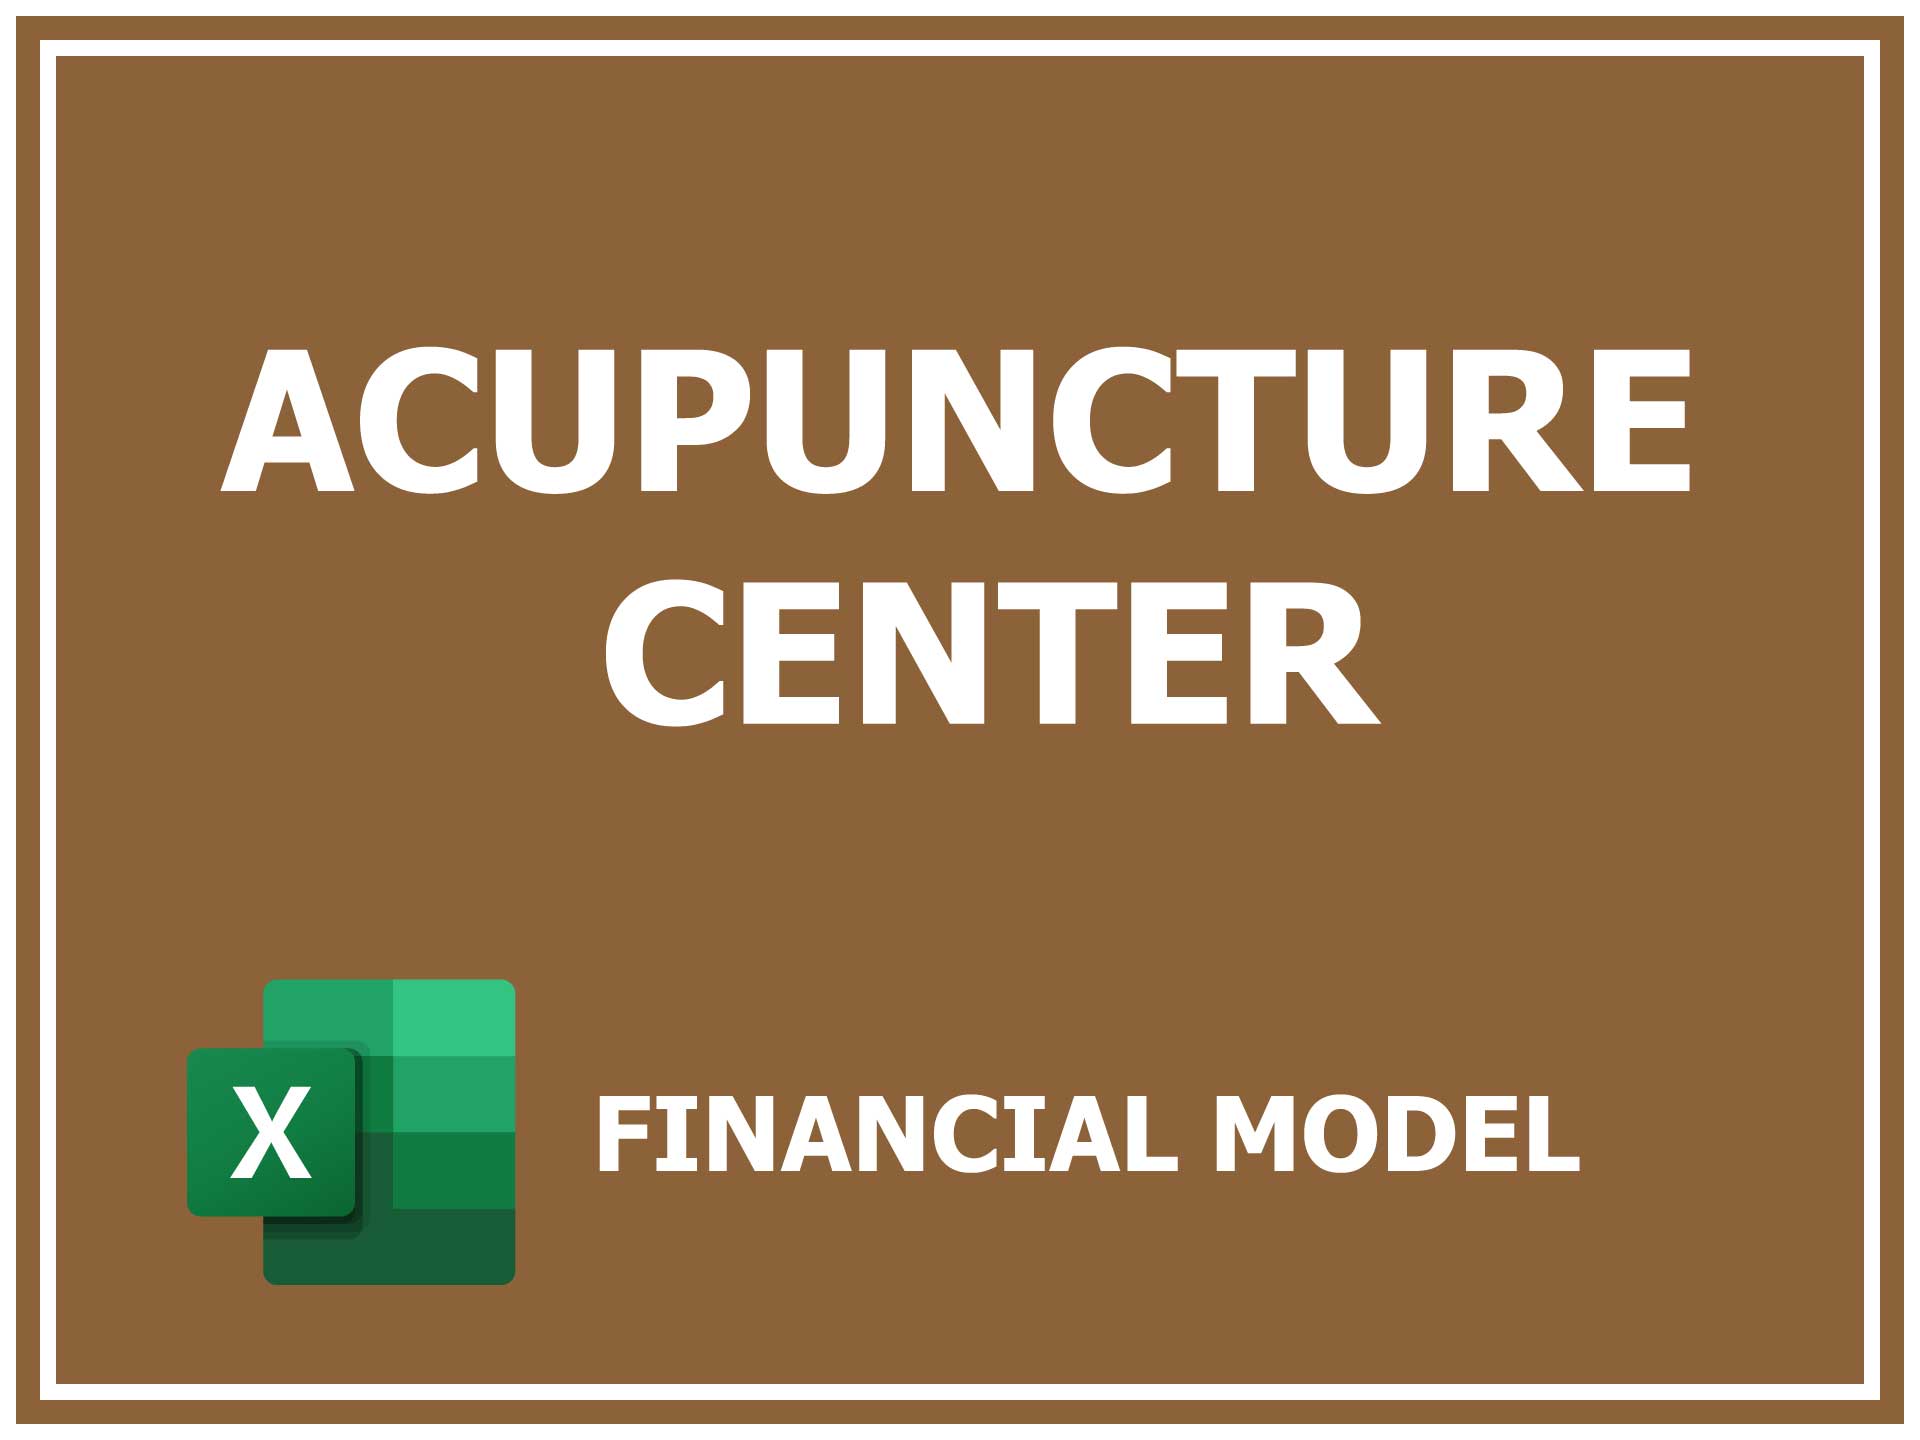 Acupuncture Center